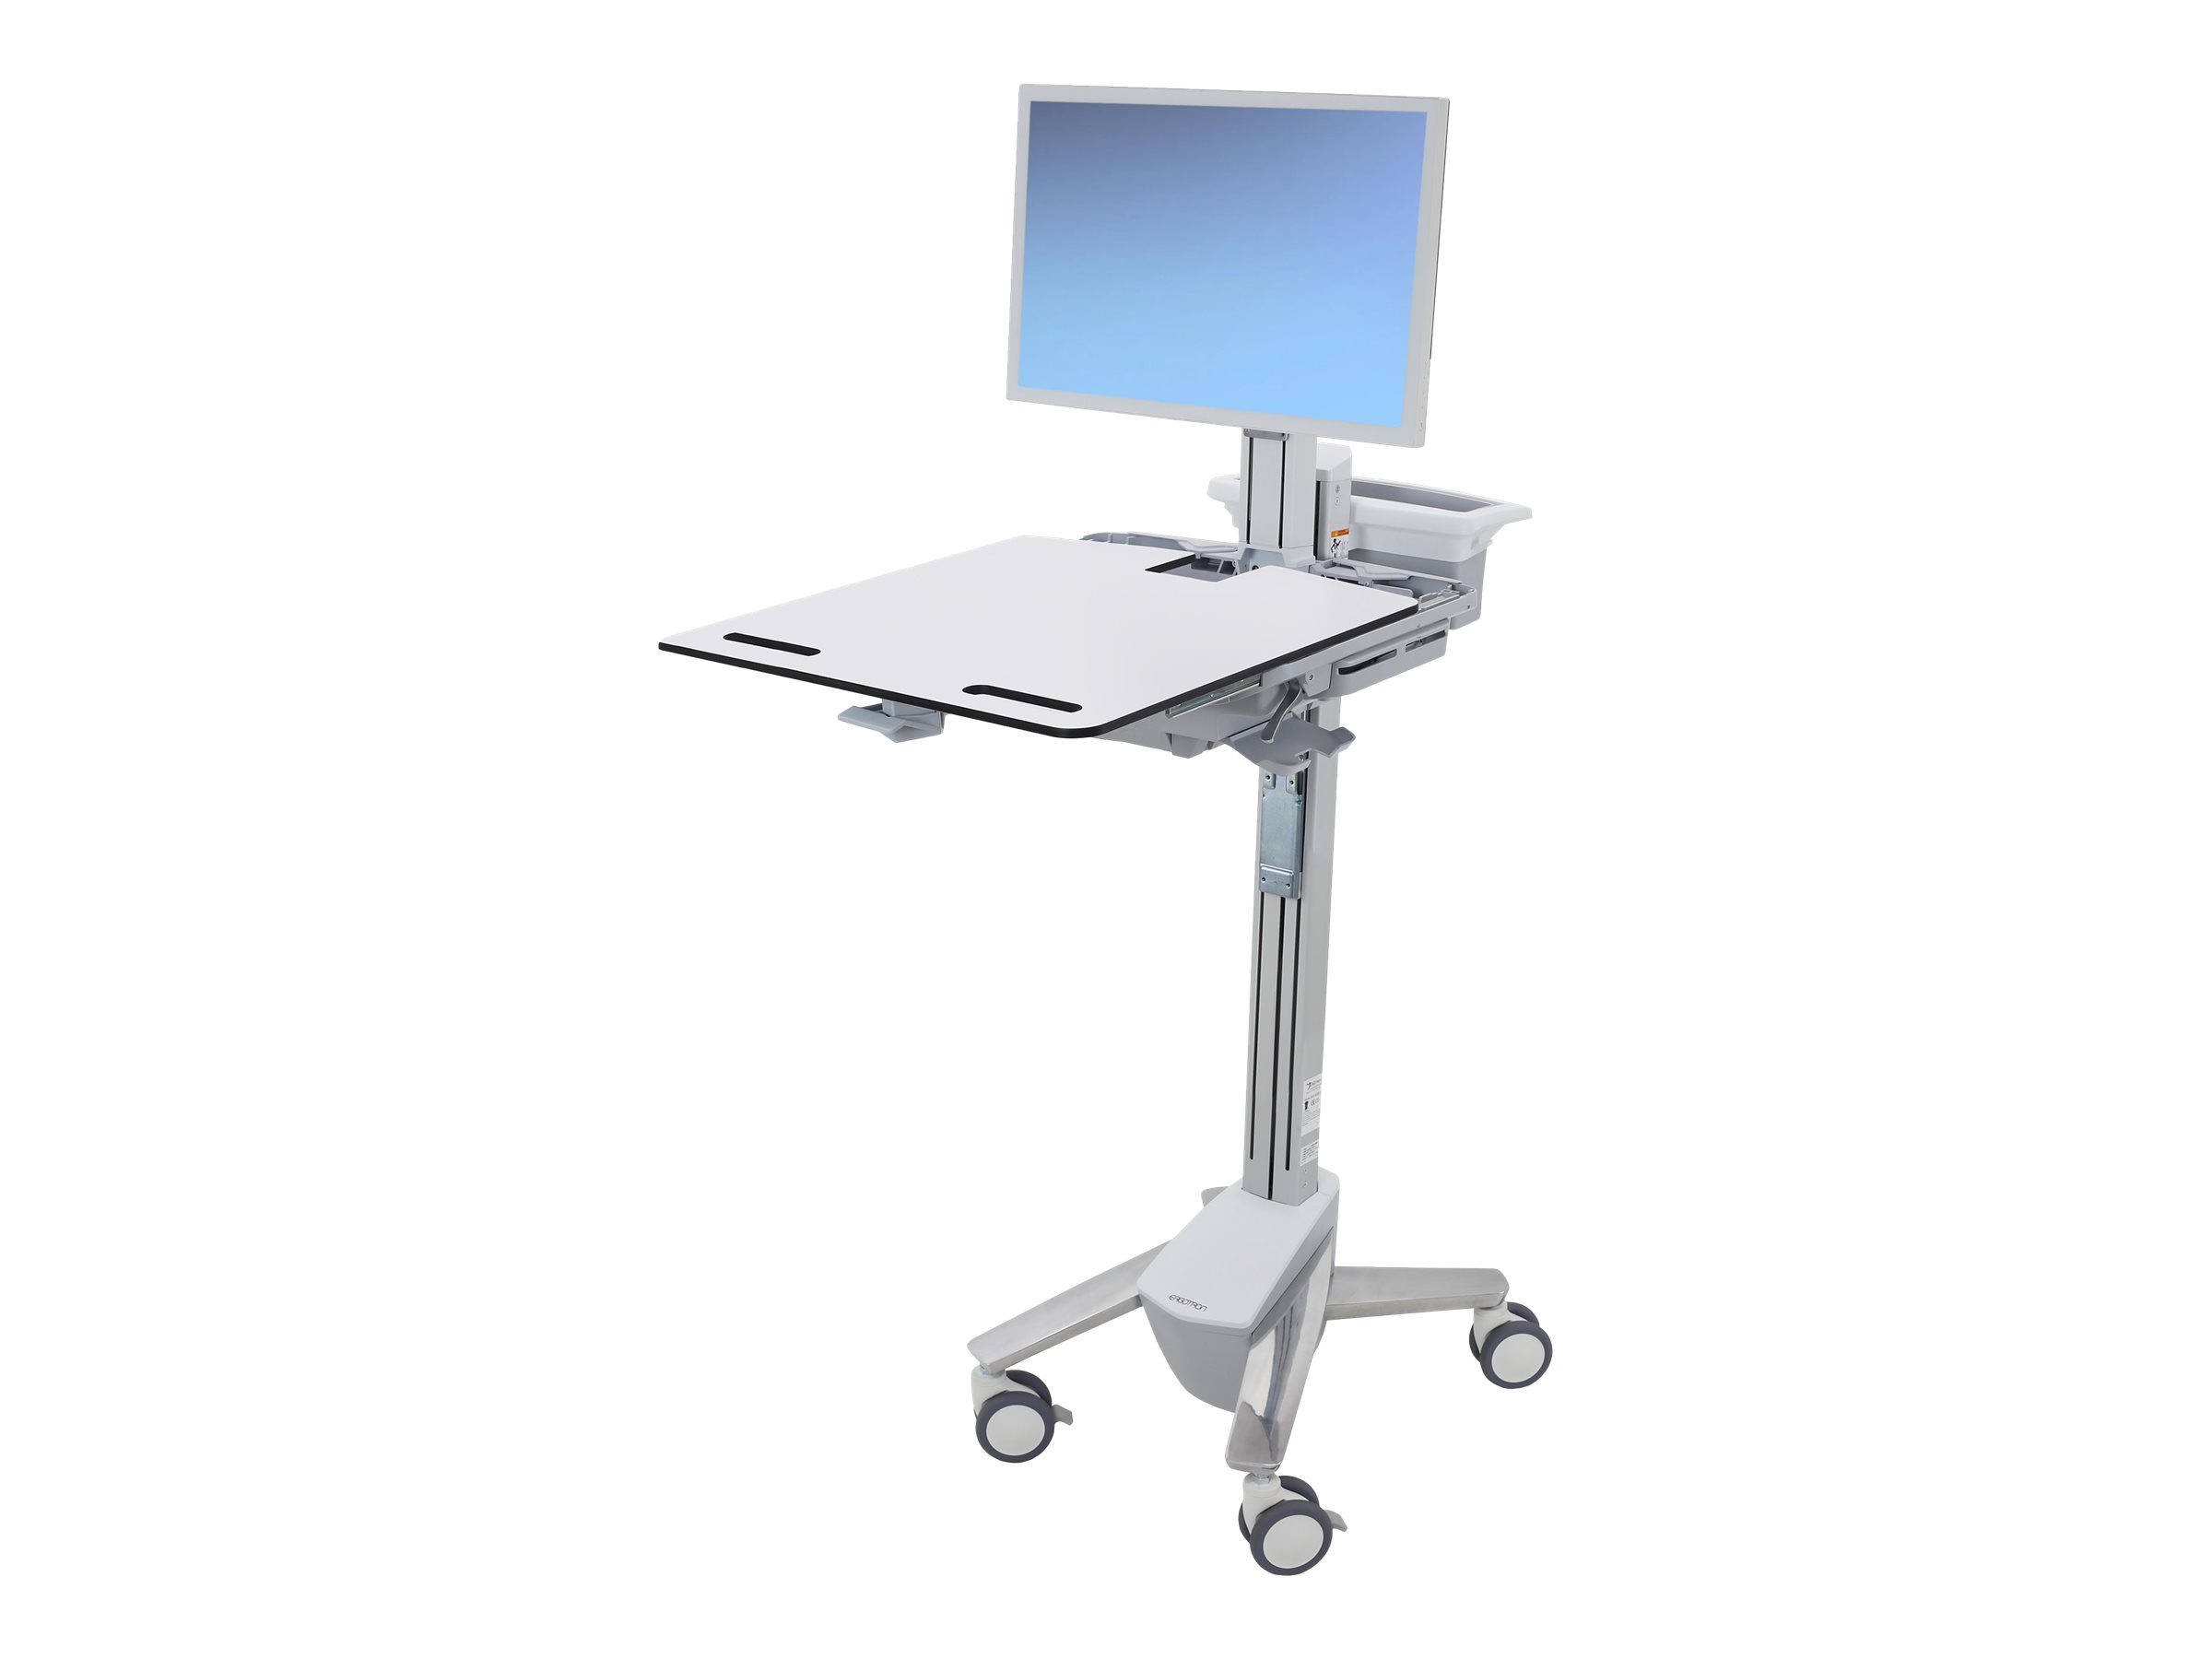 Ergotron Cart - Sliding Worksurface - Chariot - pour écran LCD/équipement PC - médical - aluminium, acier zingué, plastique haute qualité - Taille d'écran : jusqu'à 24 pouces - SV41-6320-0 - Accessoires pour écran